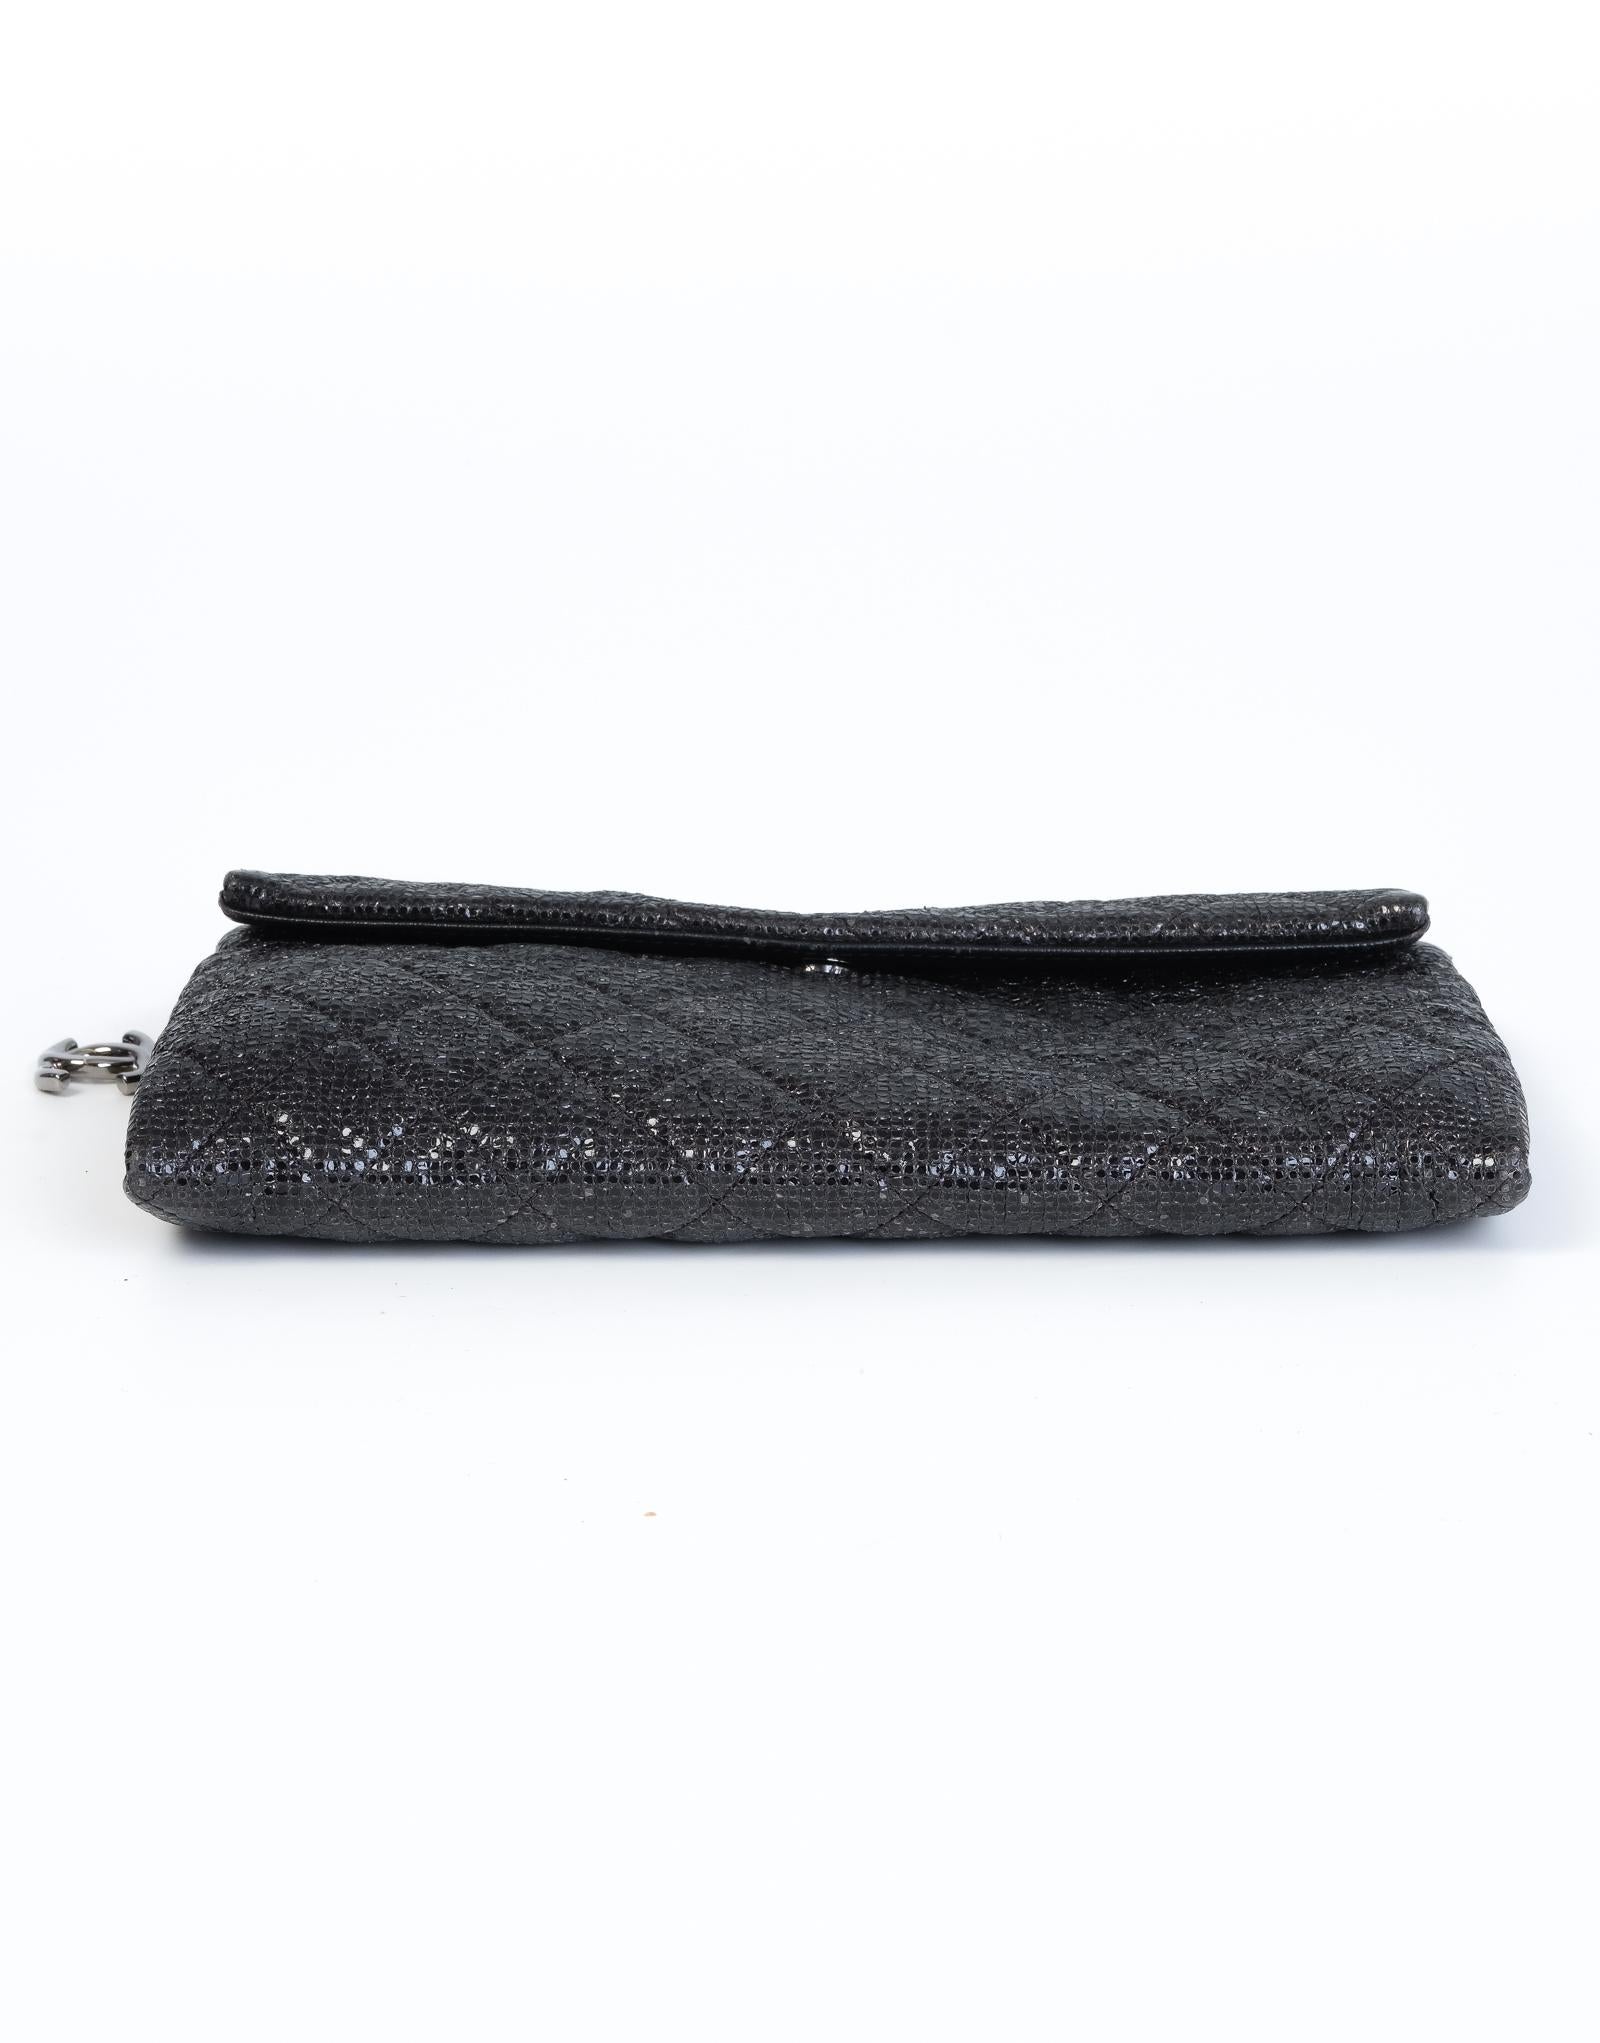 Noir Sac à bandoulière Chanel CC matelassé à breloques métalliques 2014 en vente